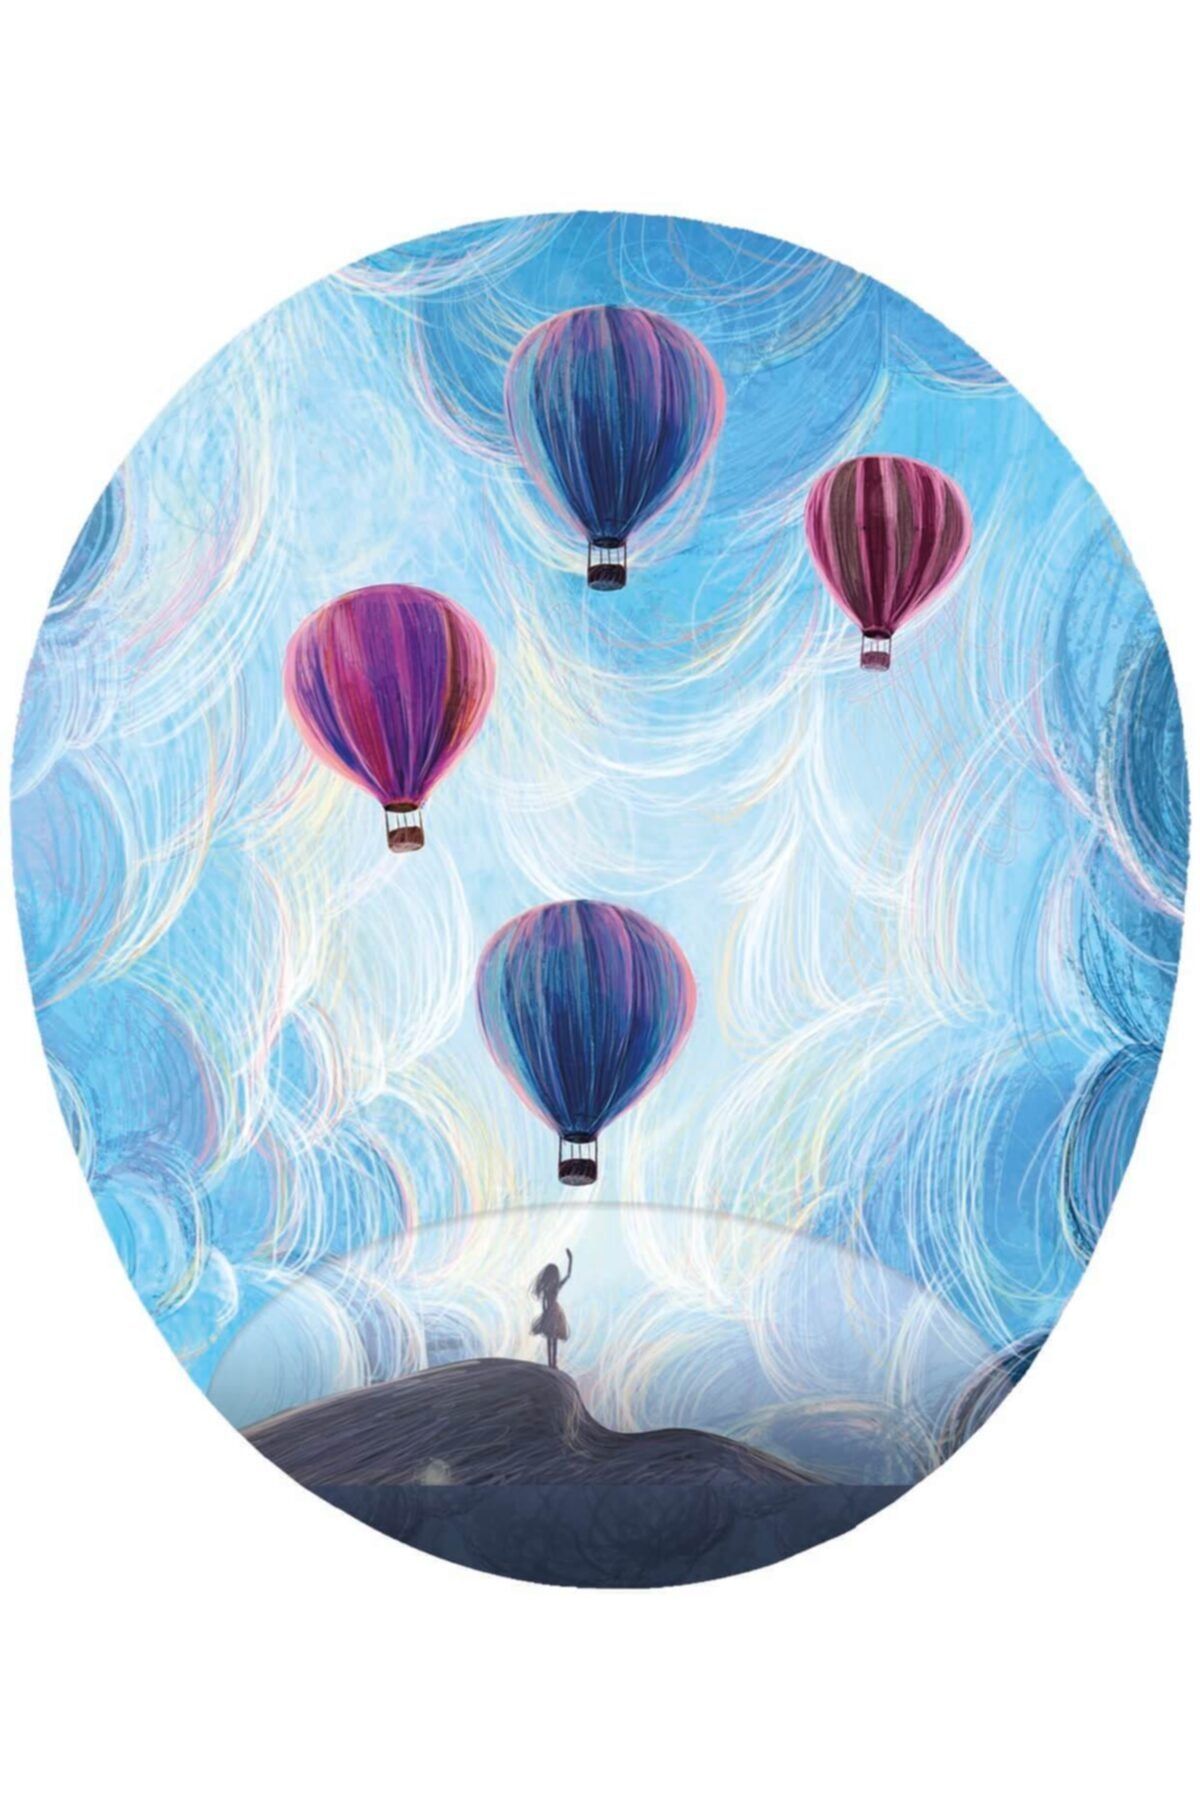 MAĞAZA DEPOM Bilek Destekli Mouse Pad - Hava Balonlarını Uğurlayan Kadın Görselli